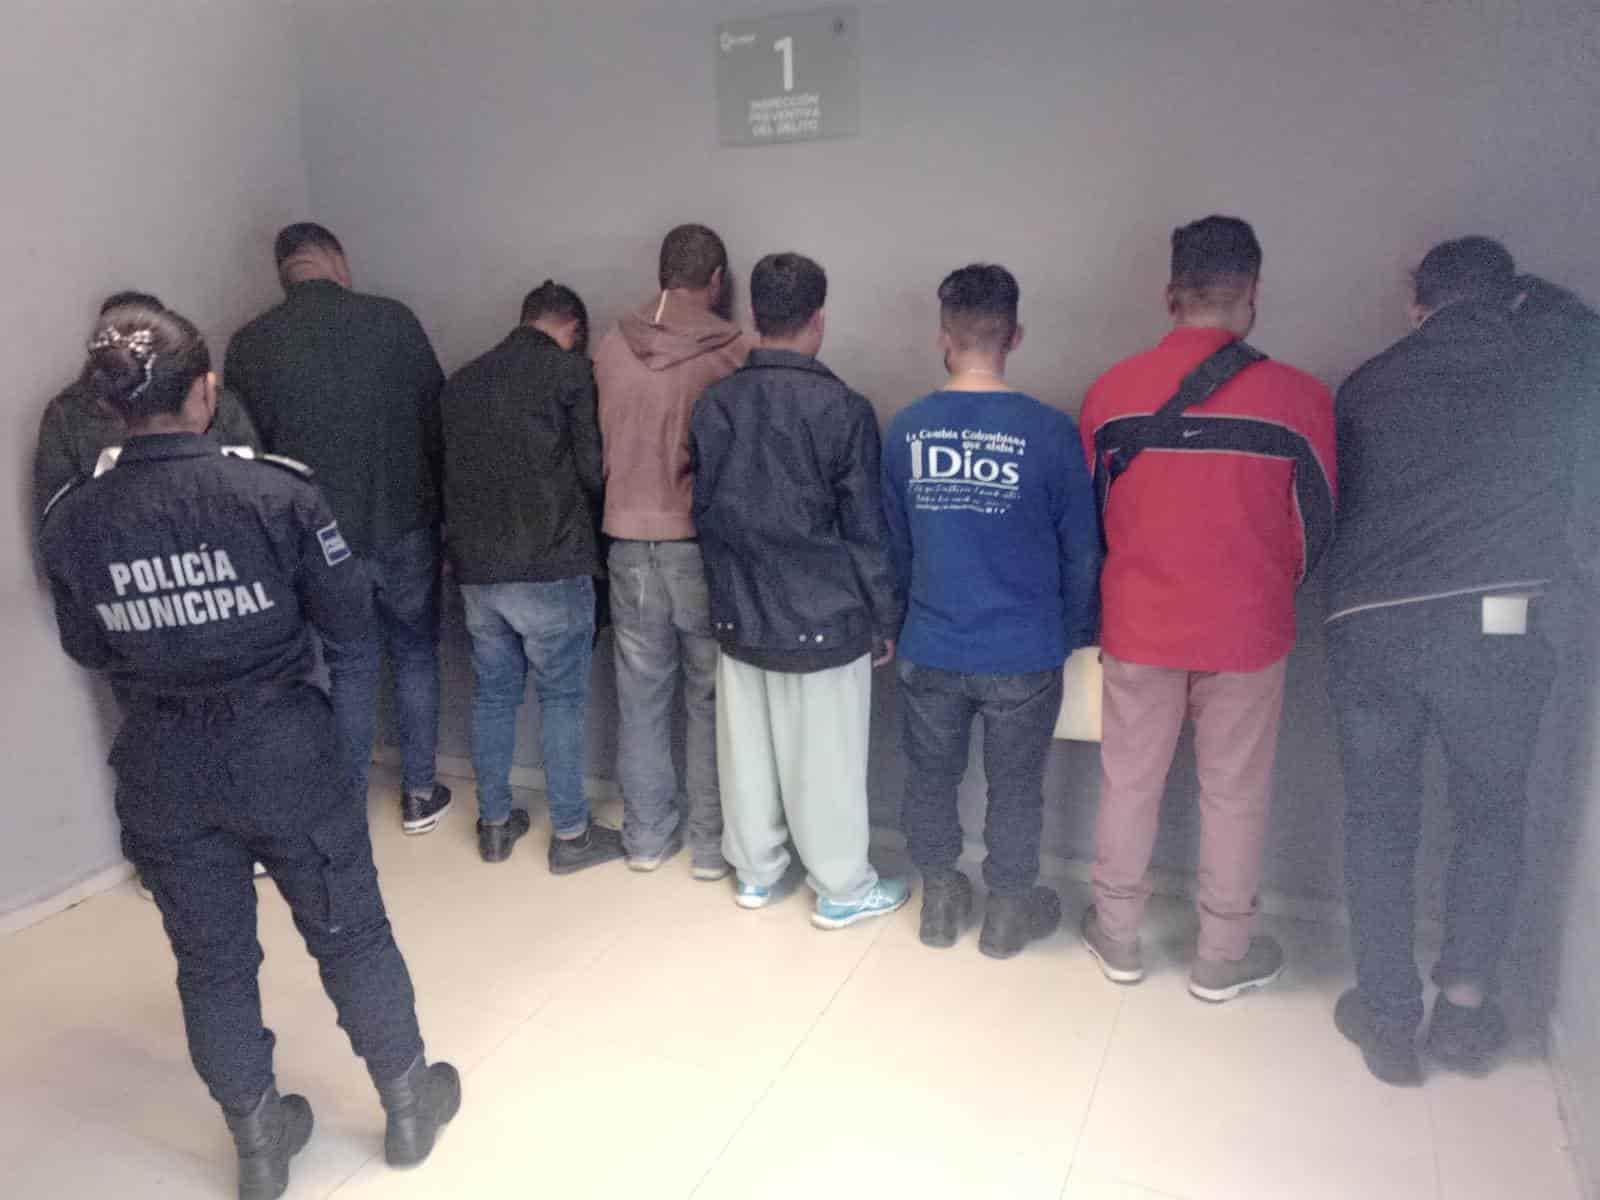 Tras la fuga de internos de un centro de rehabilitación, elementos de la policía de Escobedo acudieron al lugar, rescataron a otros 19 jóvenes y detuvieron a ocho trabajadores luego de denuncias de presuntos maltratos físicos